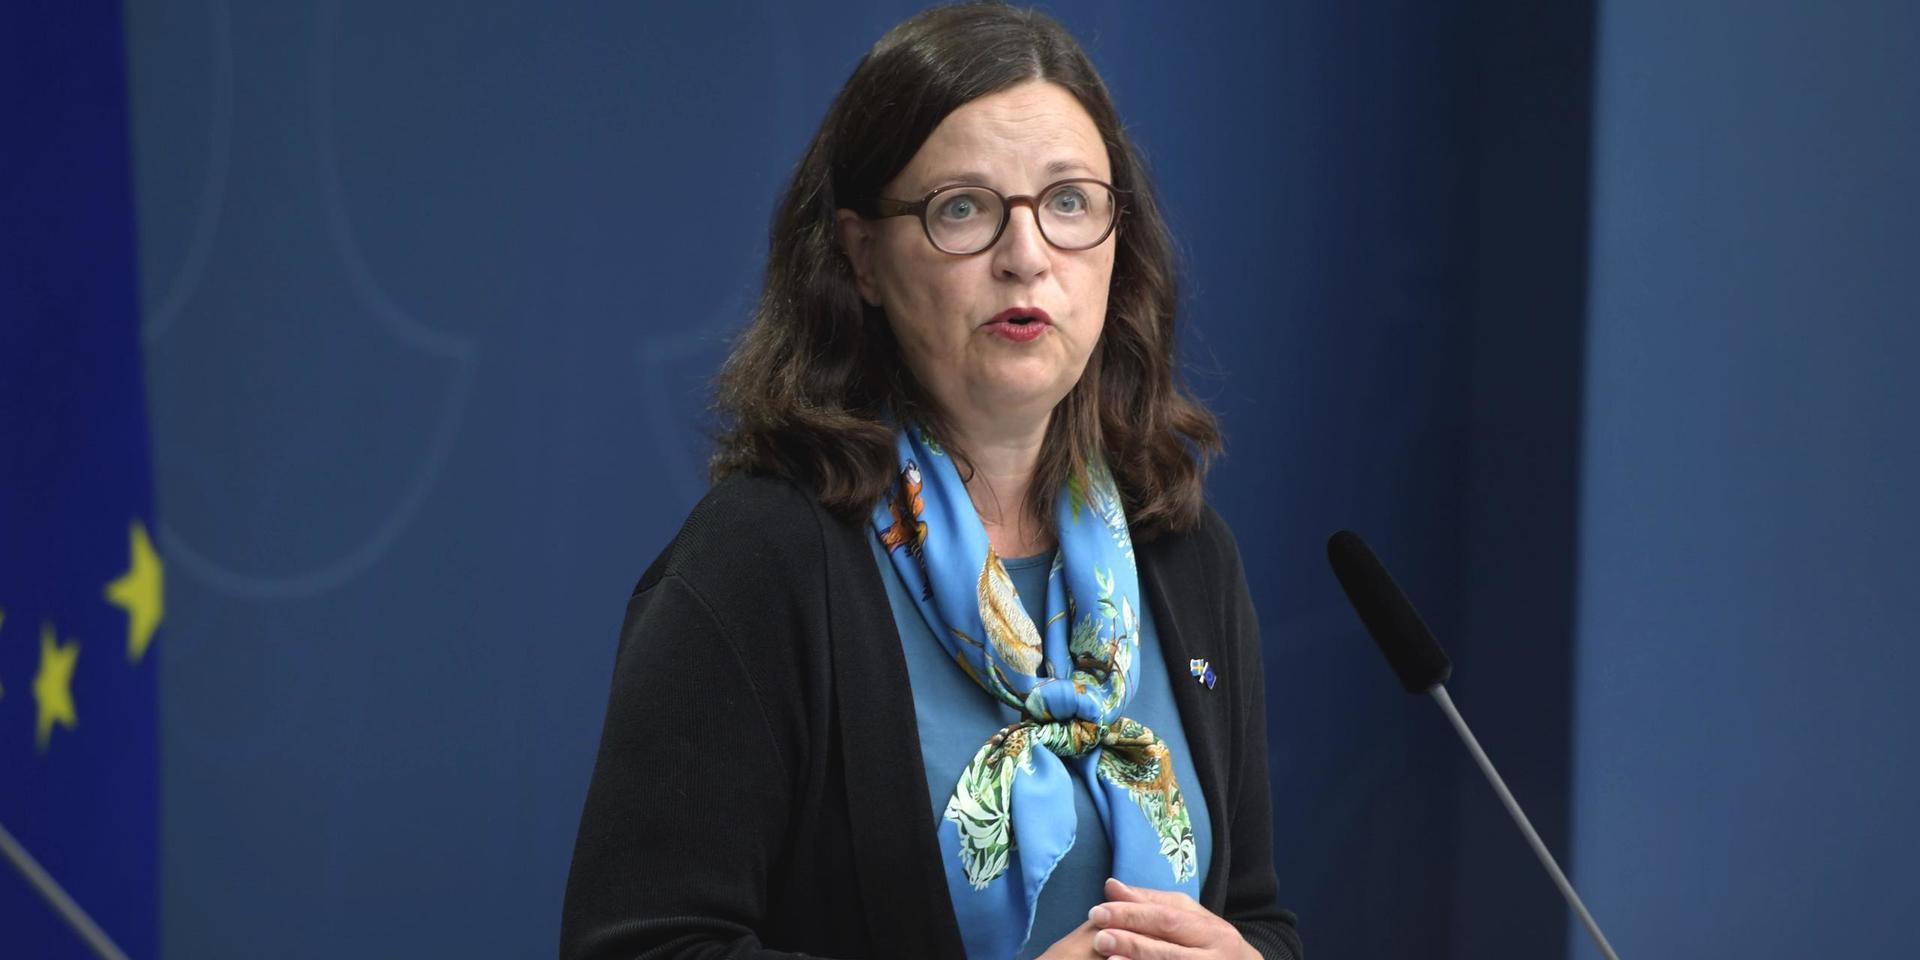 Utbildningsminister Anna Ekström (S)